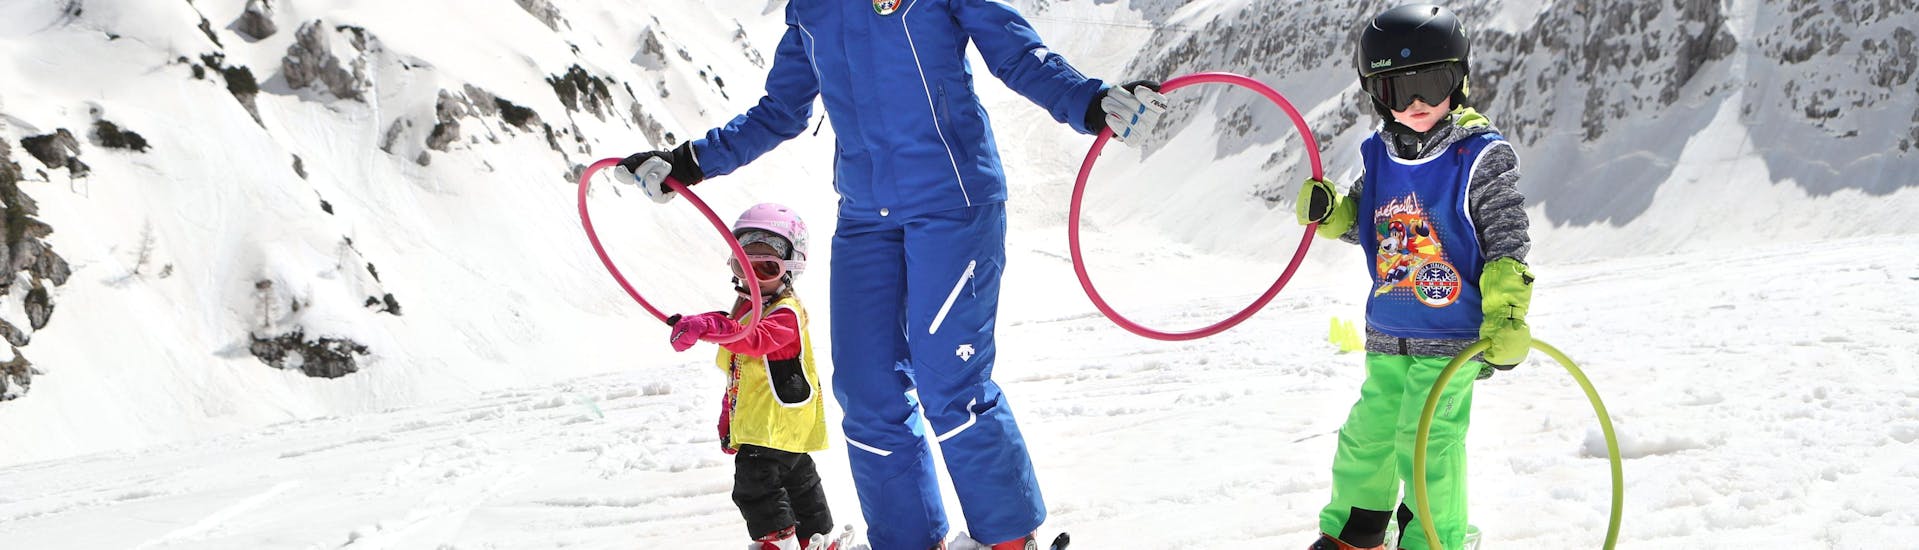 Skilessen voor kinderen voor alle niveaus.